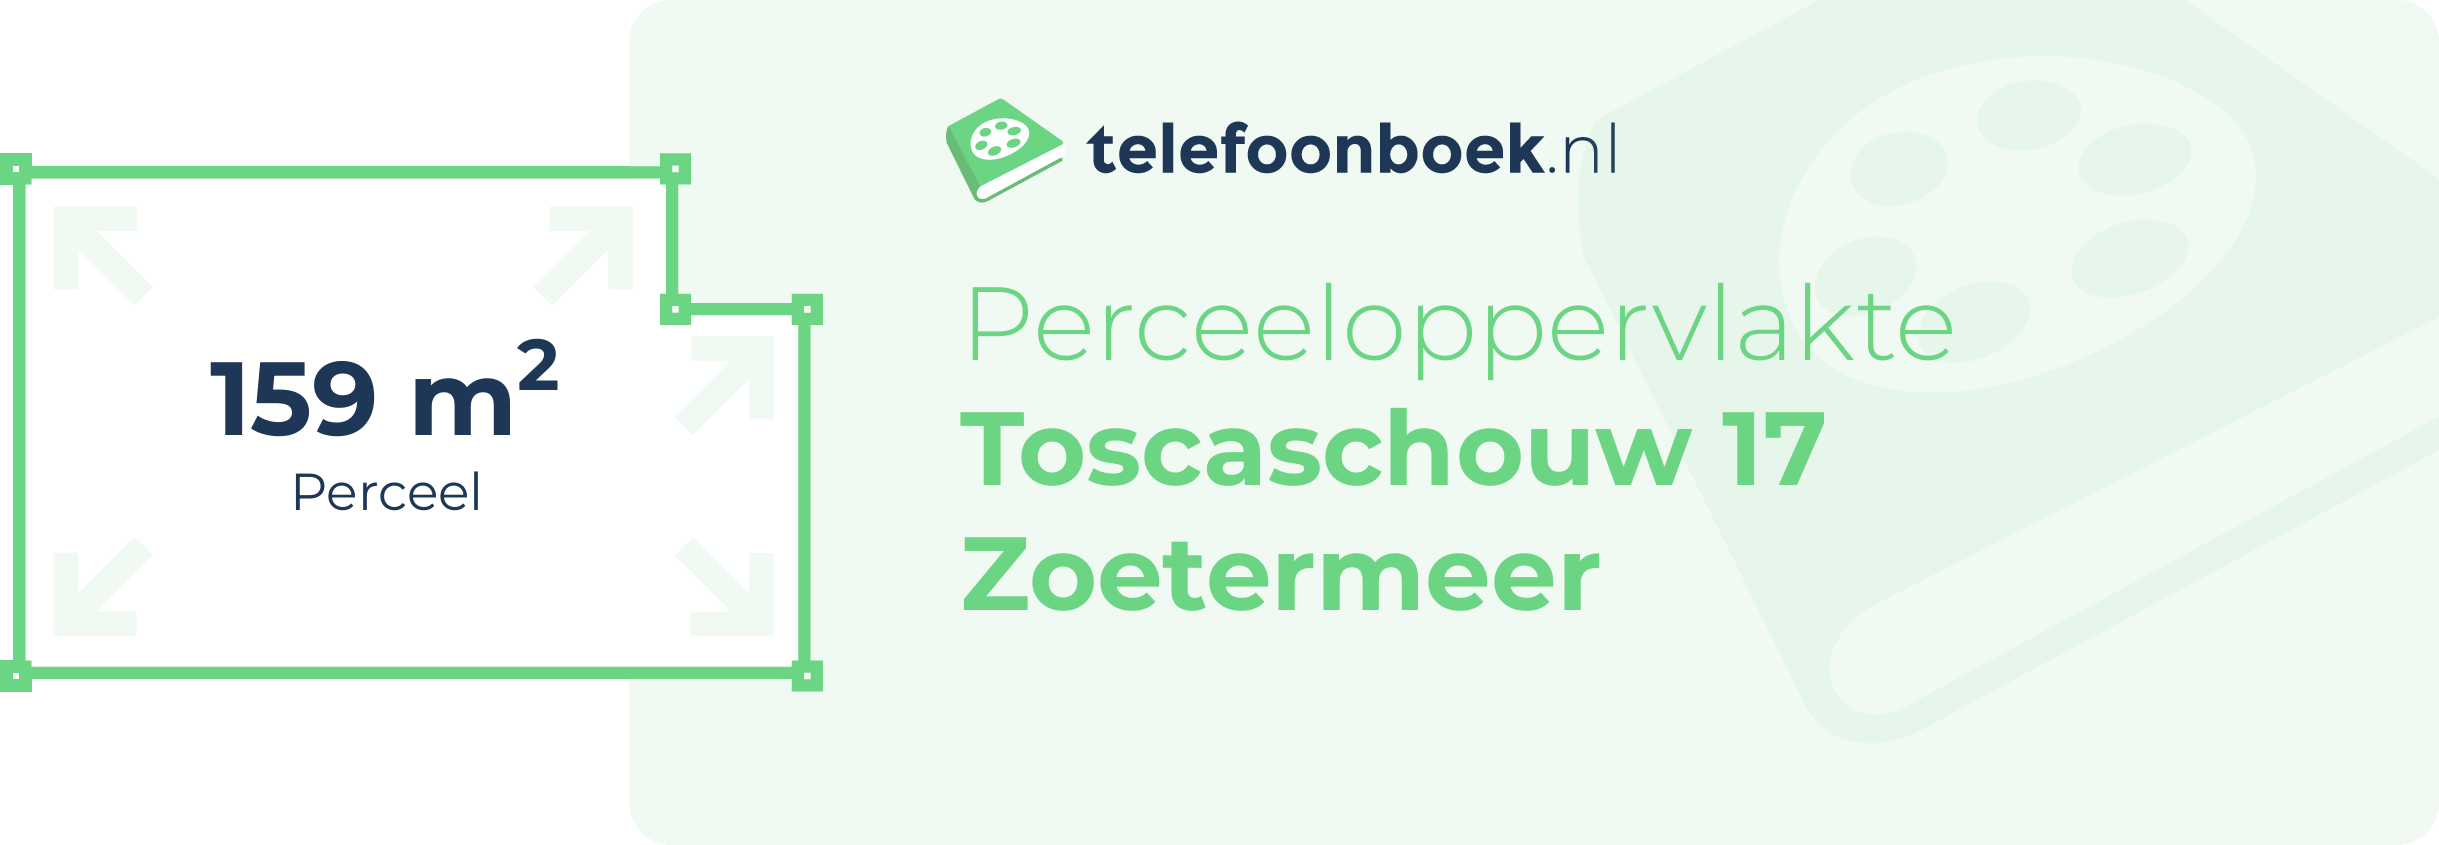 Perceeloppervlakte Toscaschouw 17 Zoetermeer